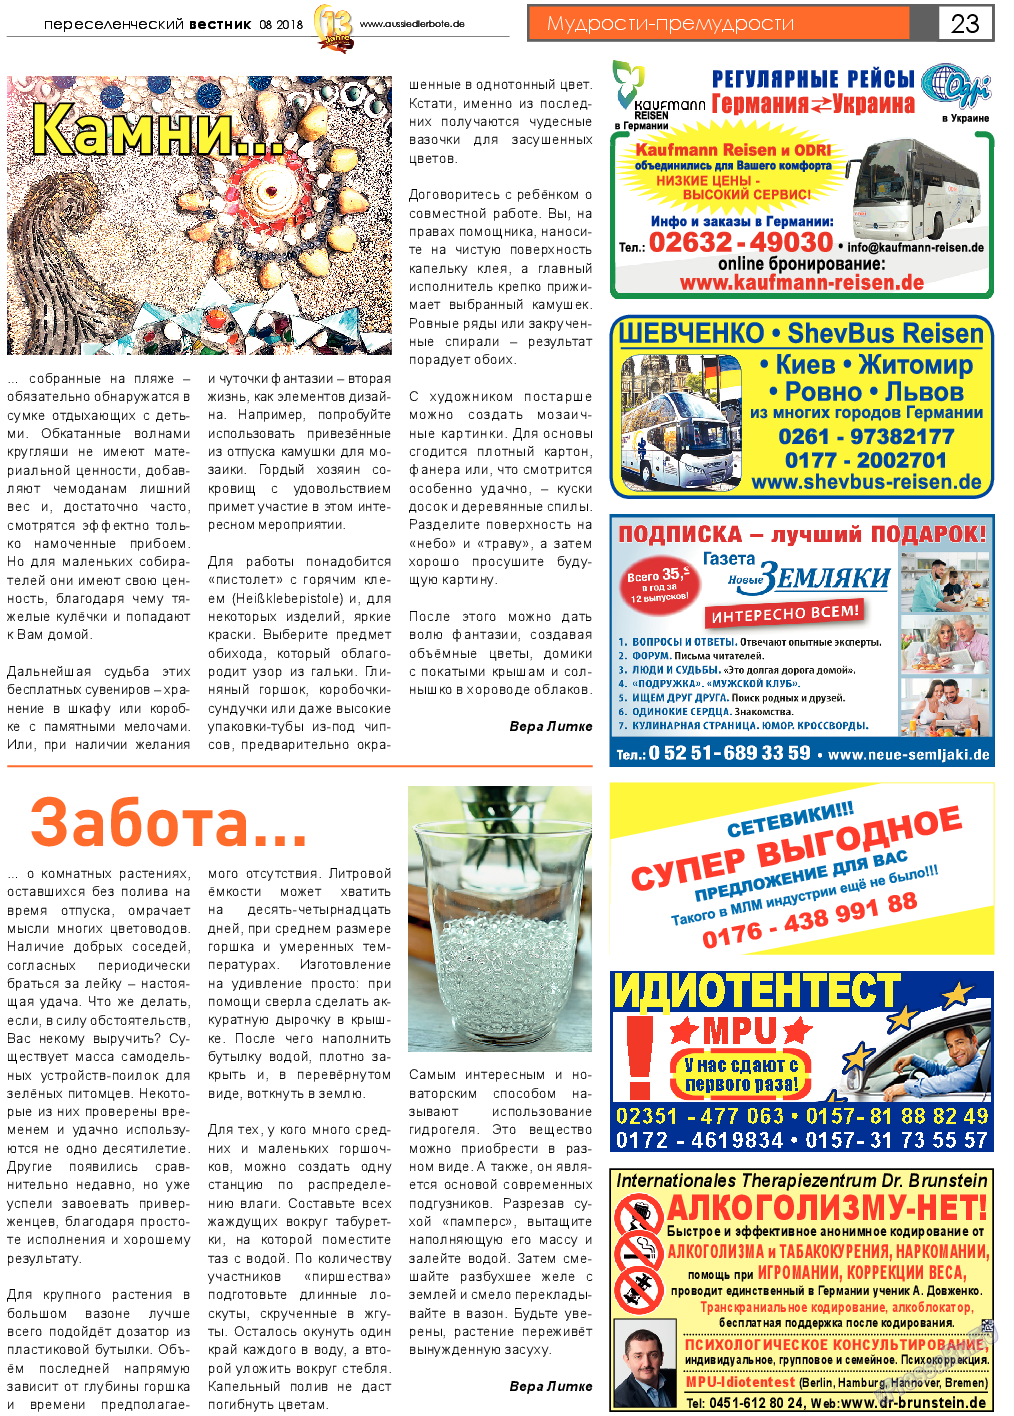 Переселенческий вестник (газета). 2018 год, номер 8, стр. 23